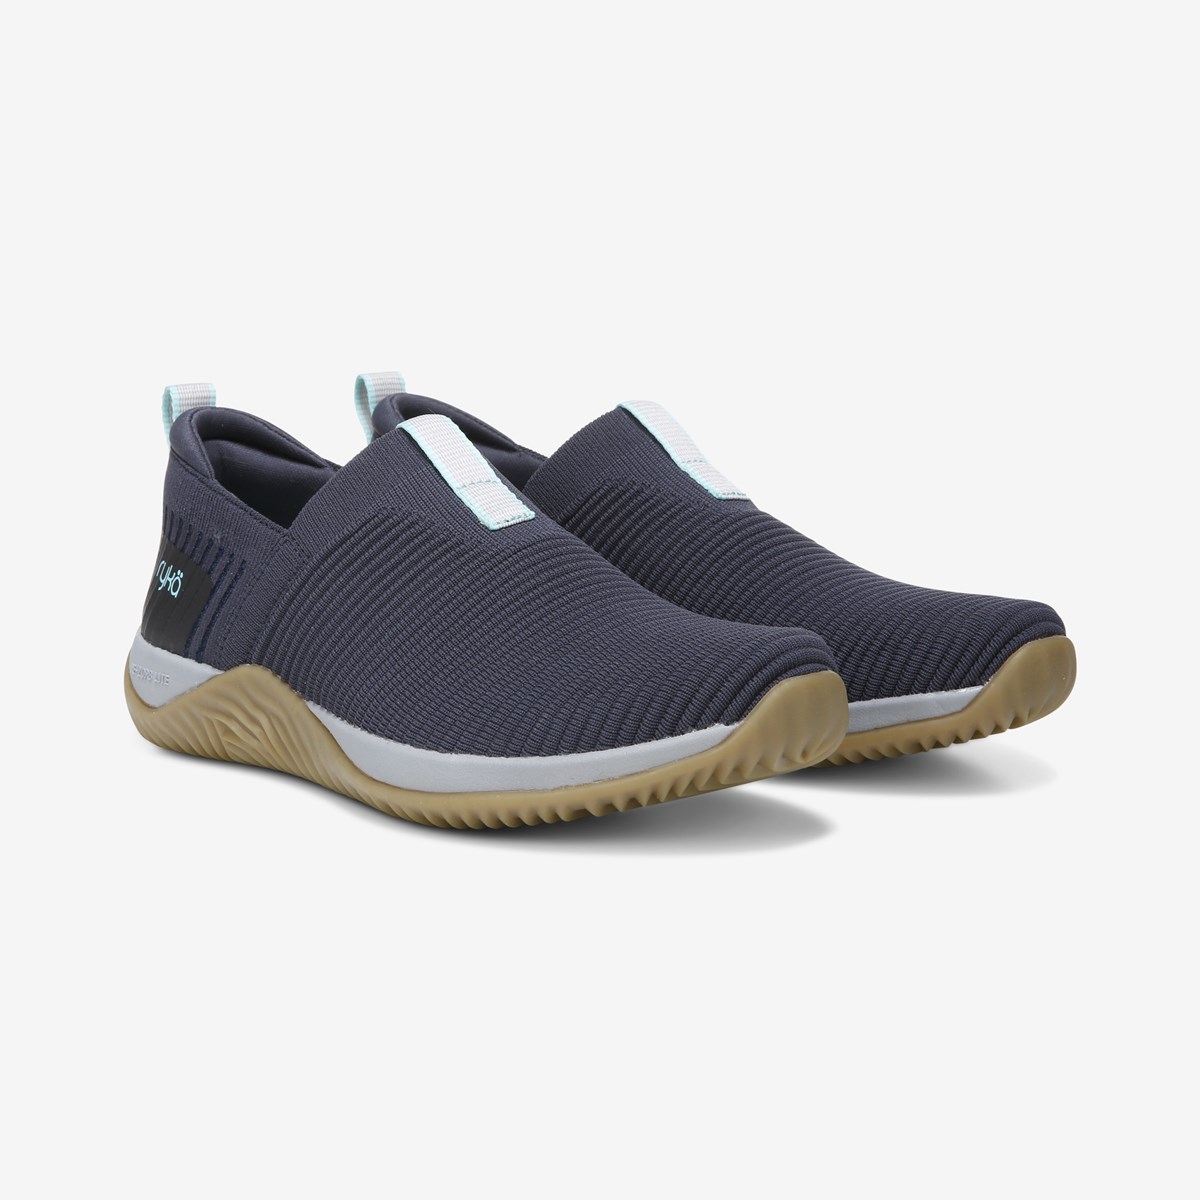 Rykä Echo Knit Slip On Sneaker | Womens Casual Shoes